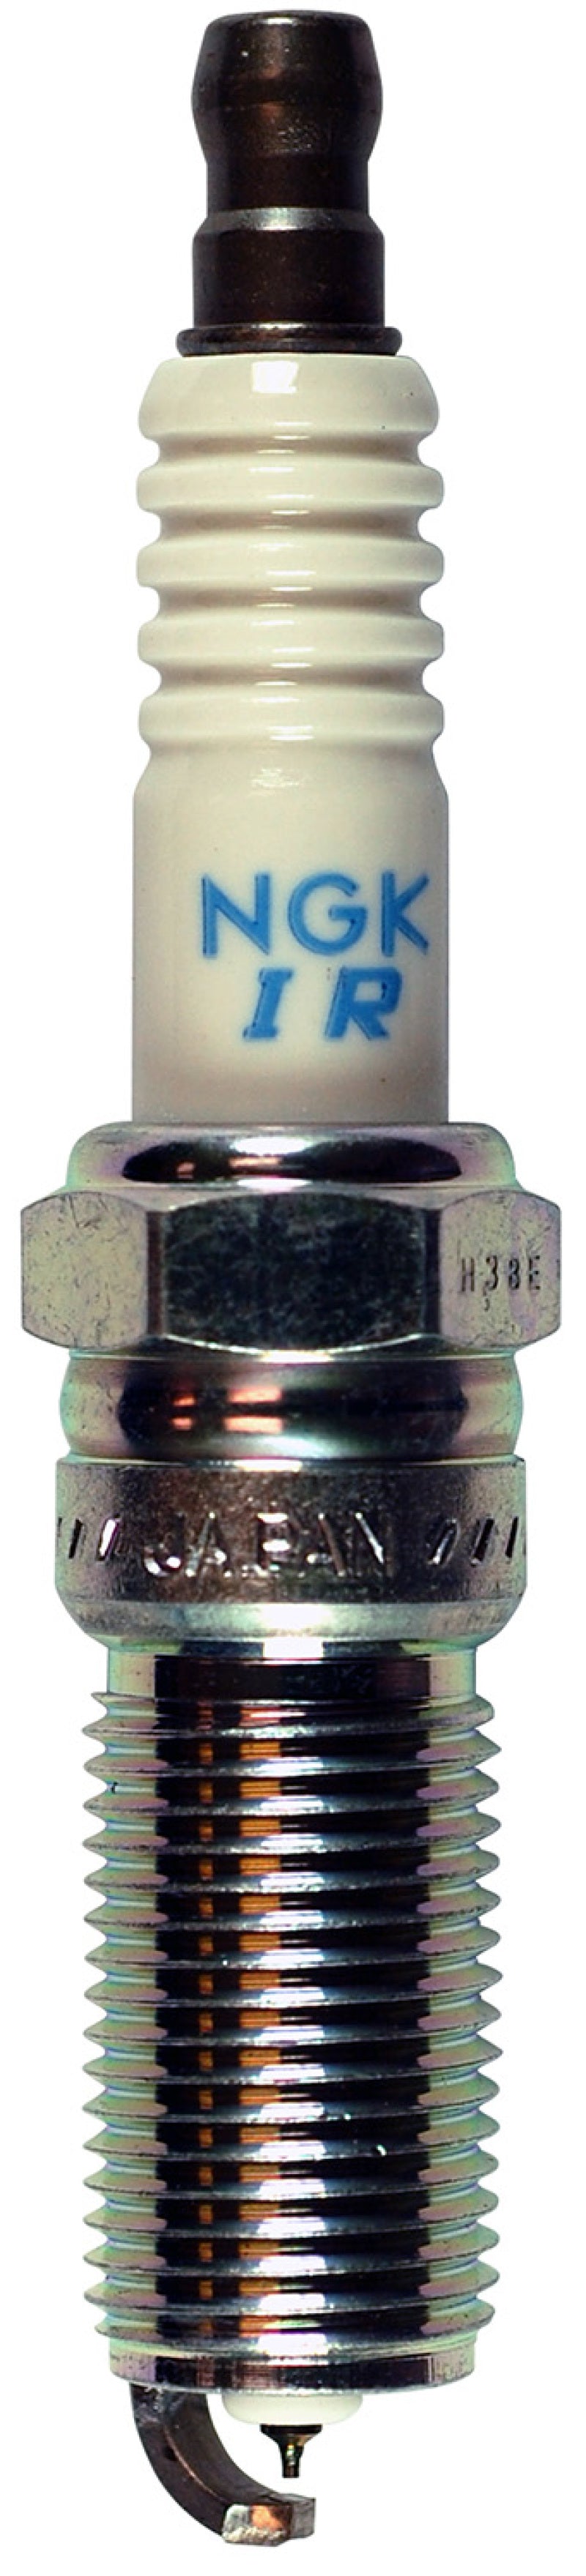 NGK Laser Iridium Spark Plug Box of 4 (SILTR6A7G) - eliteracefab.com